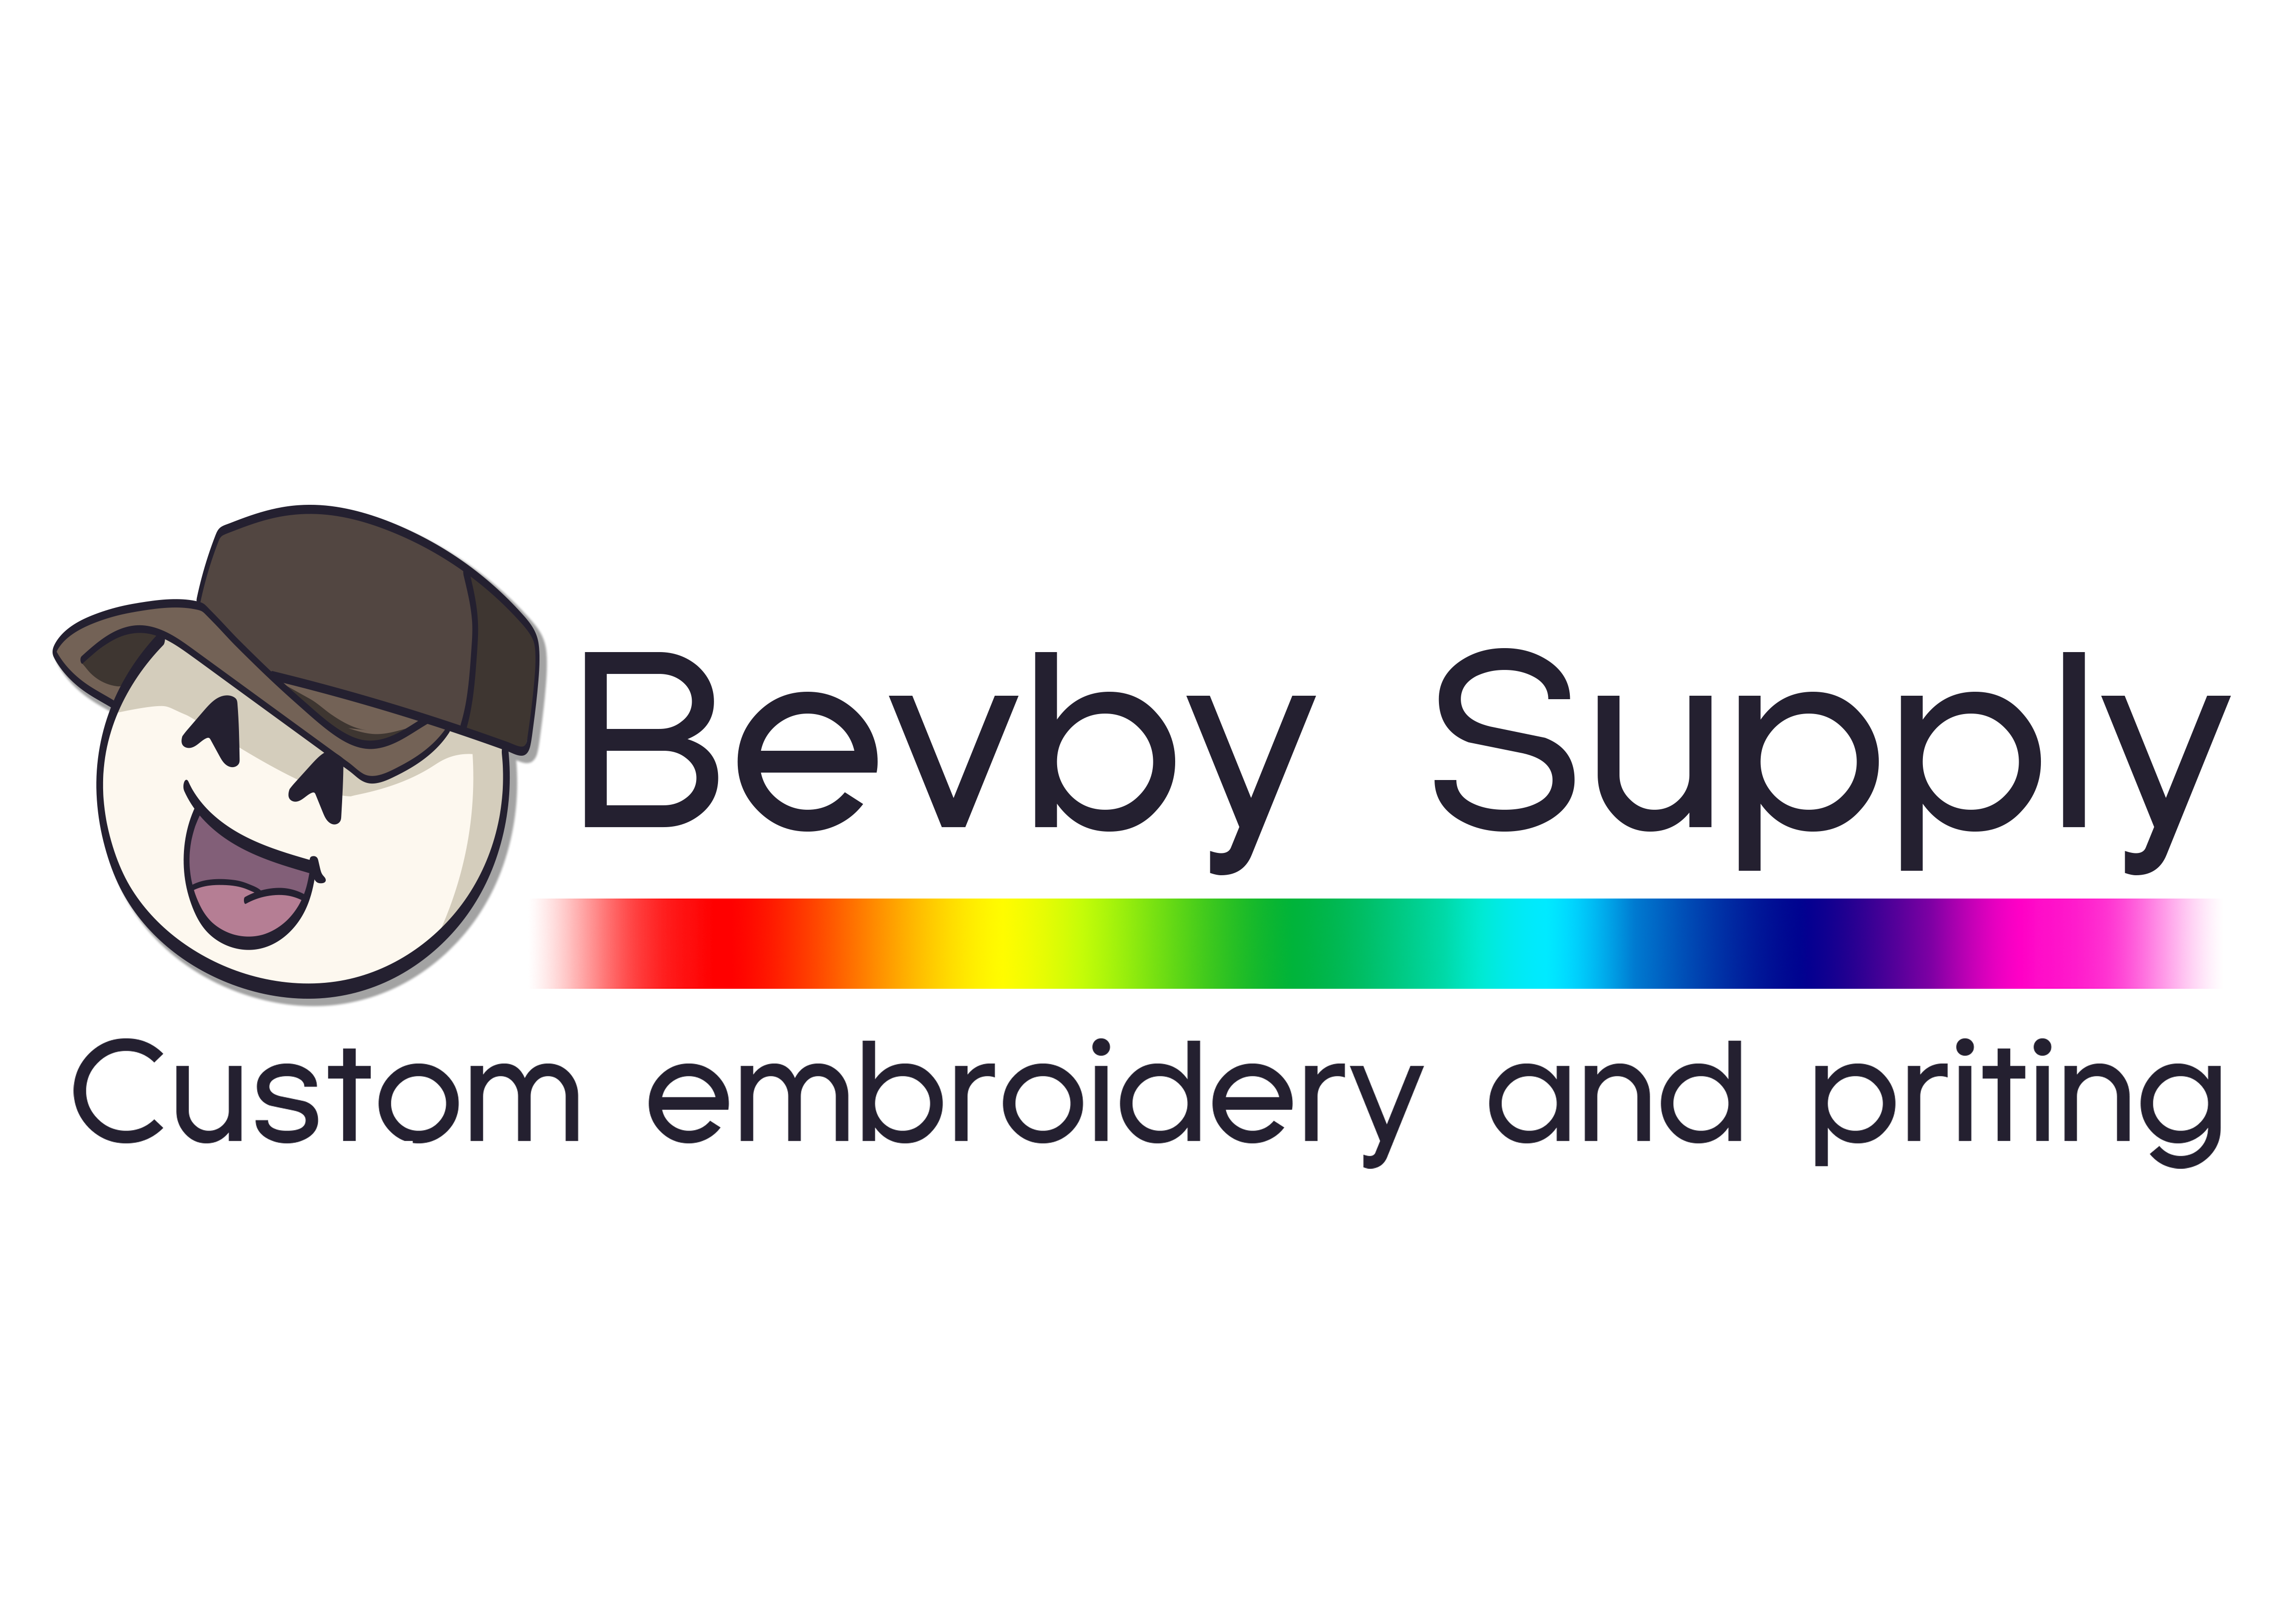 Bevby Supply